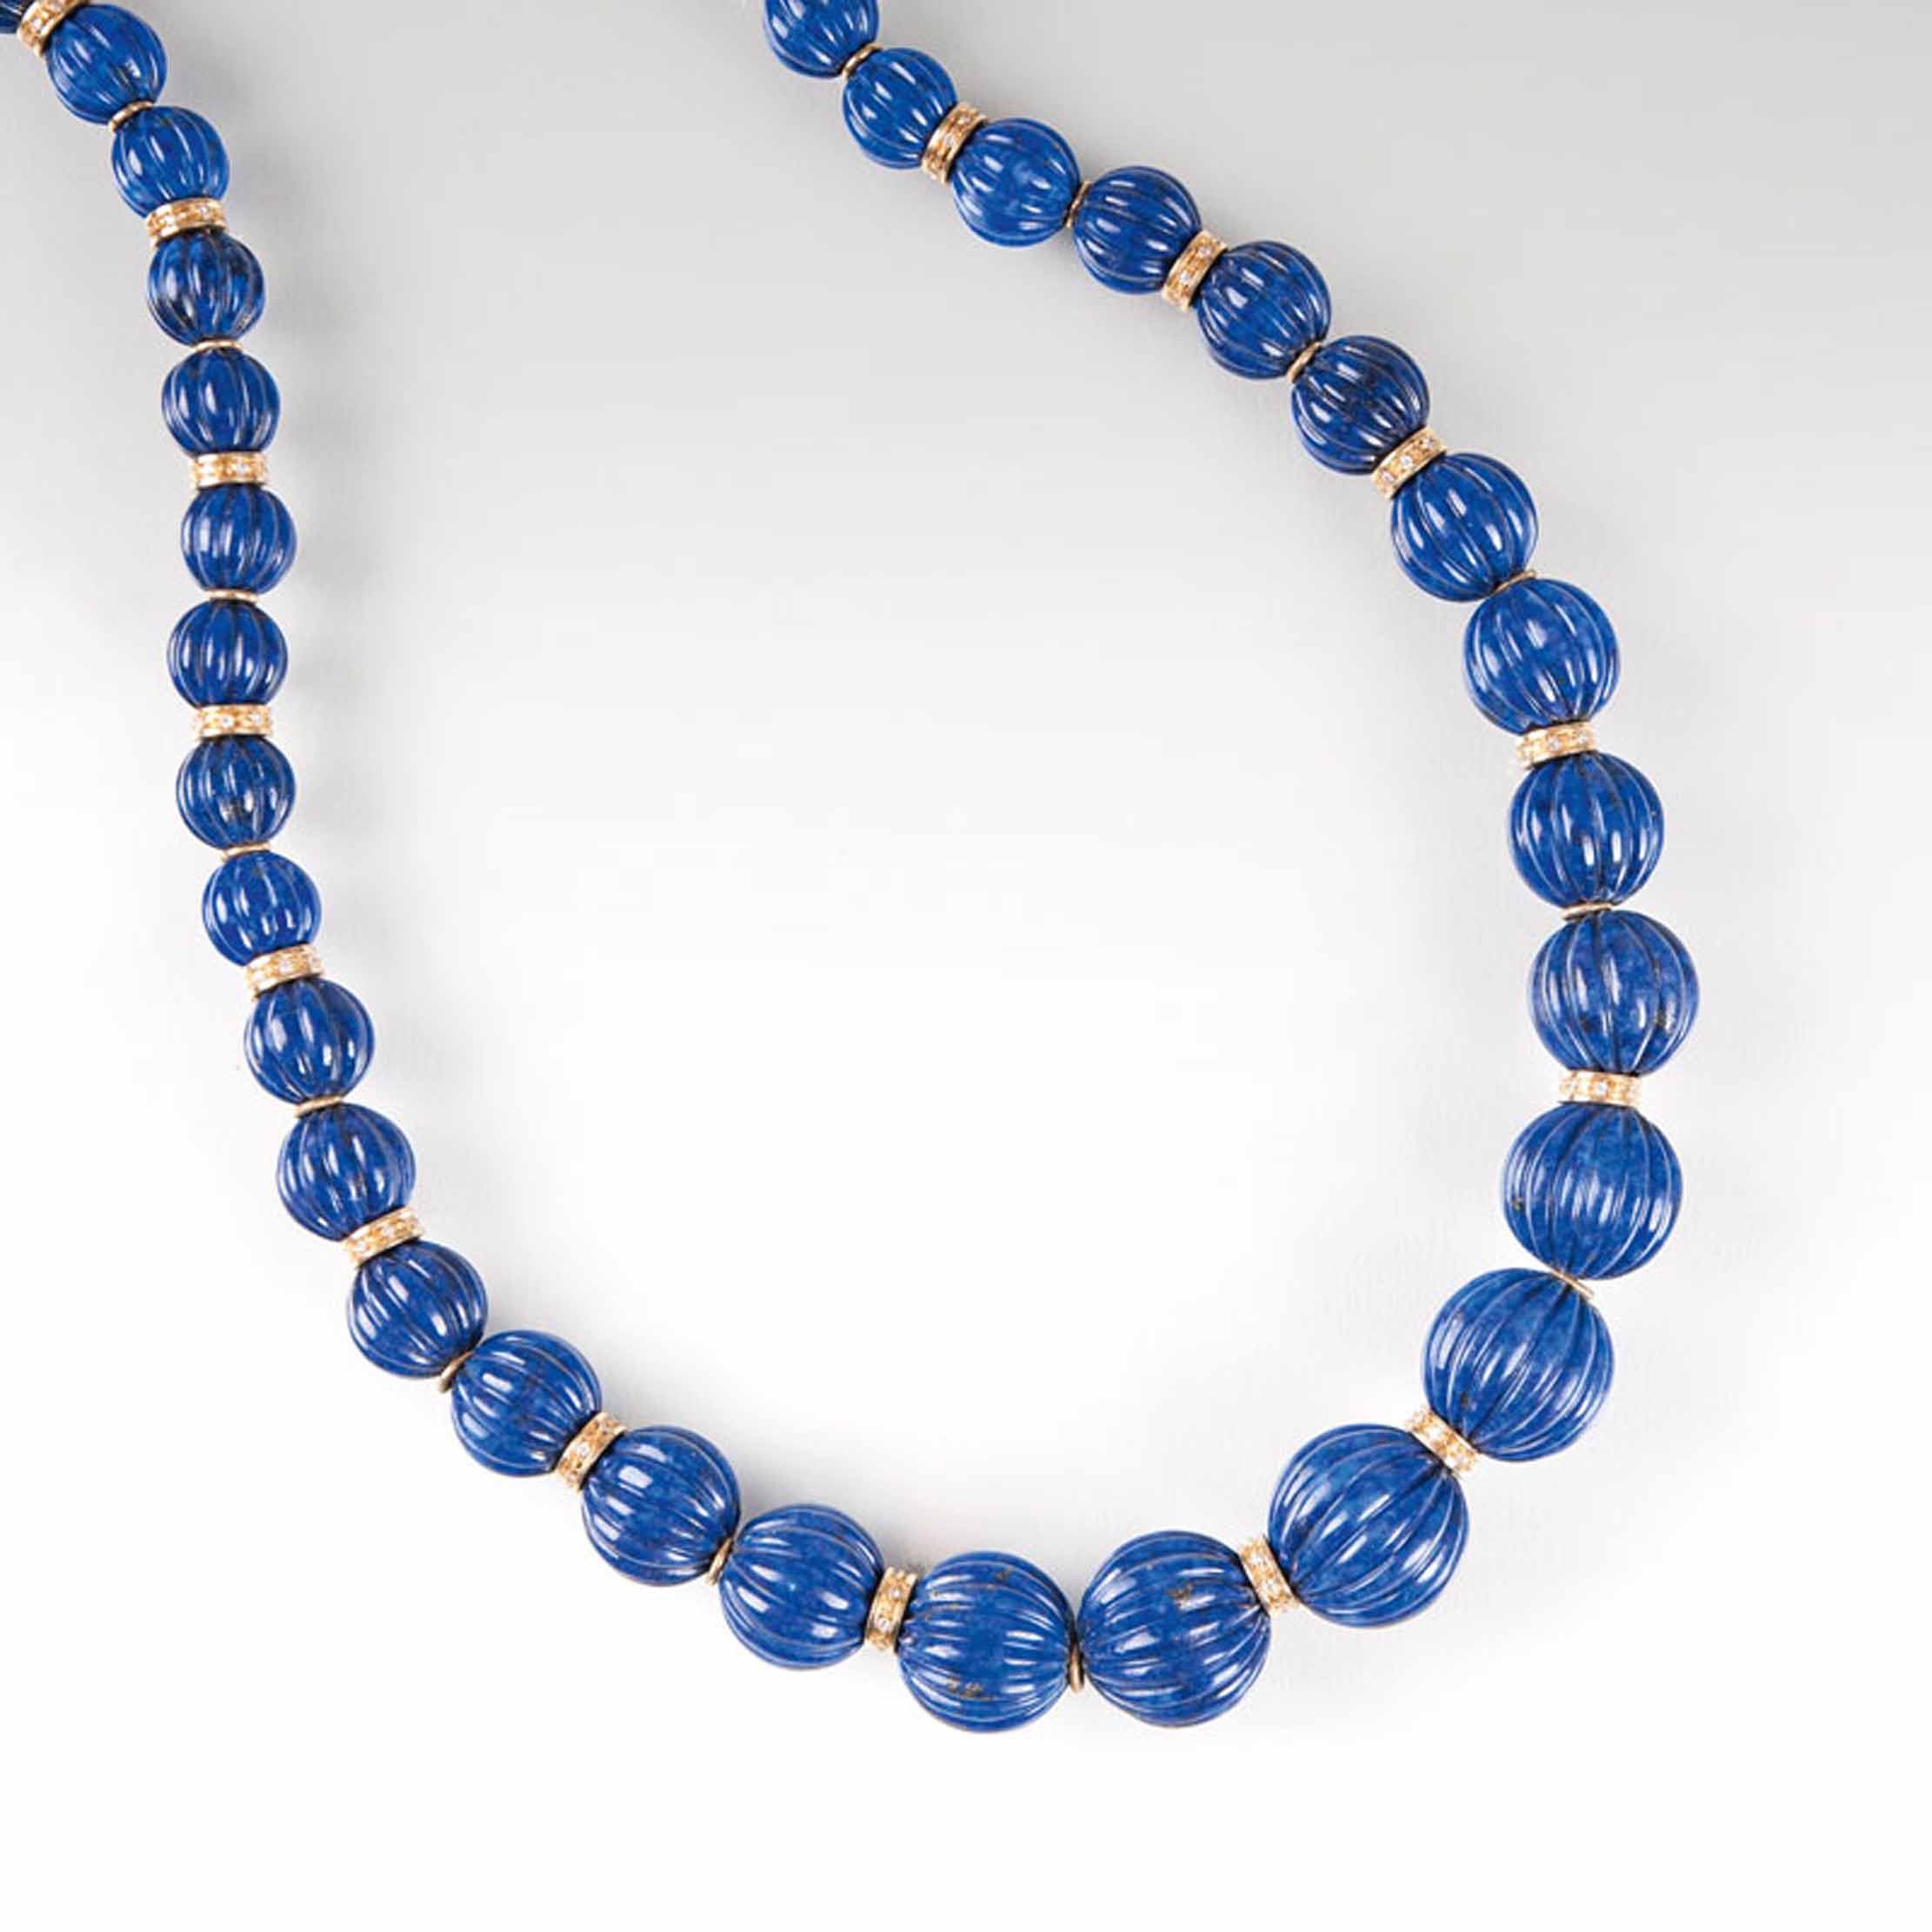 A long lapis lazuli necklace - image 2